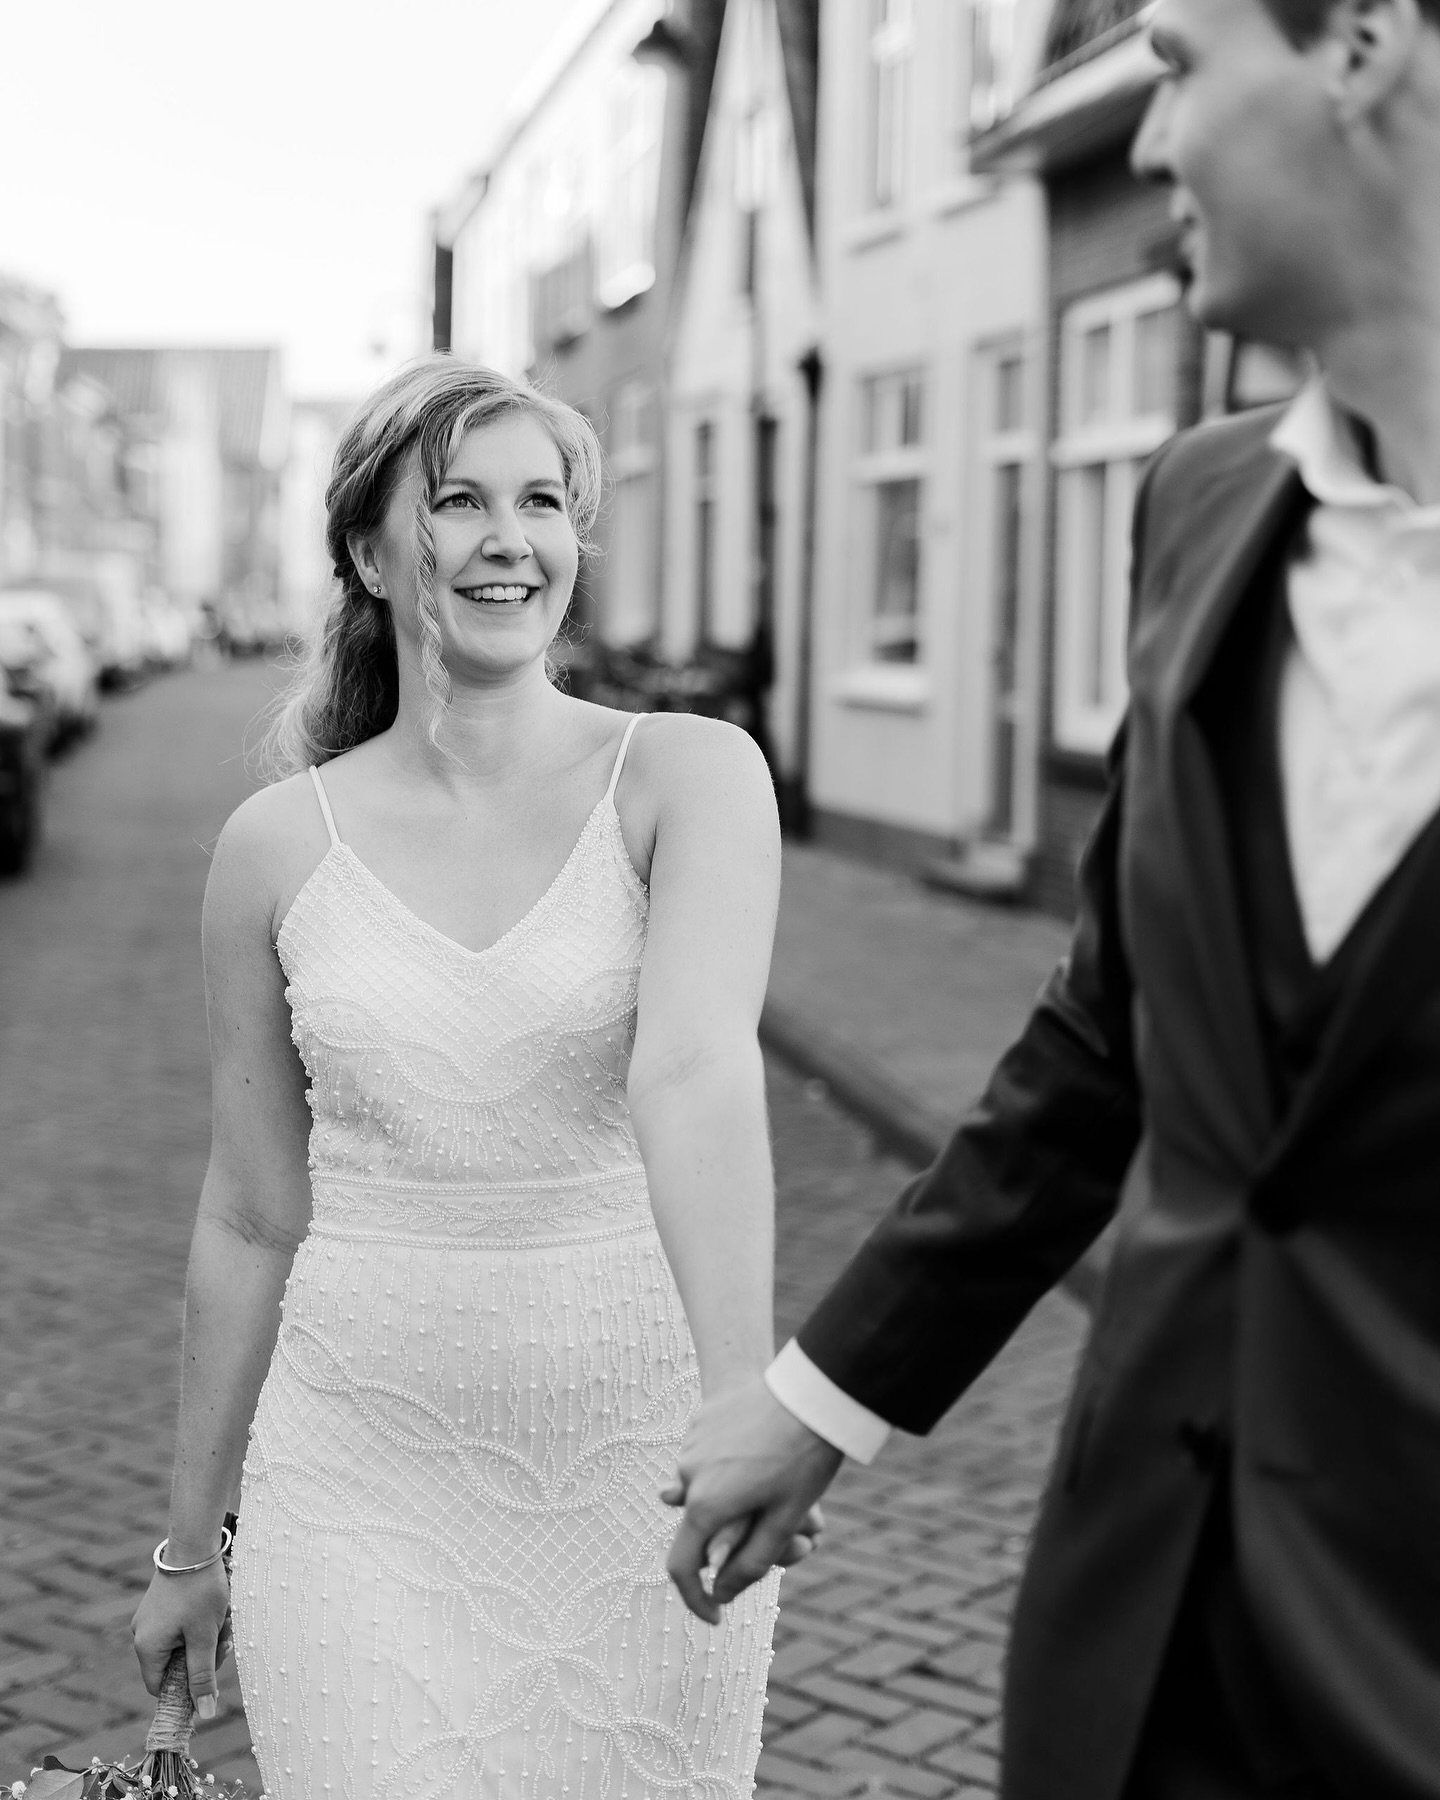 Wist je dat.. ik mijn fotografie carri&egrave;re als bruidsfotograaf begon. Ik stopte met mijn studie om mijn droom te volgen en fotografeerde fulltime de mooiste bruiloften door heel Nederland en Belgi&euml;. 💍📸

Maar toen tijdens Corona veel brui